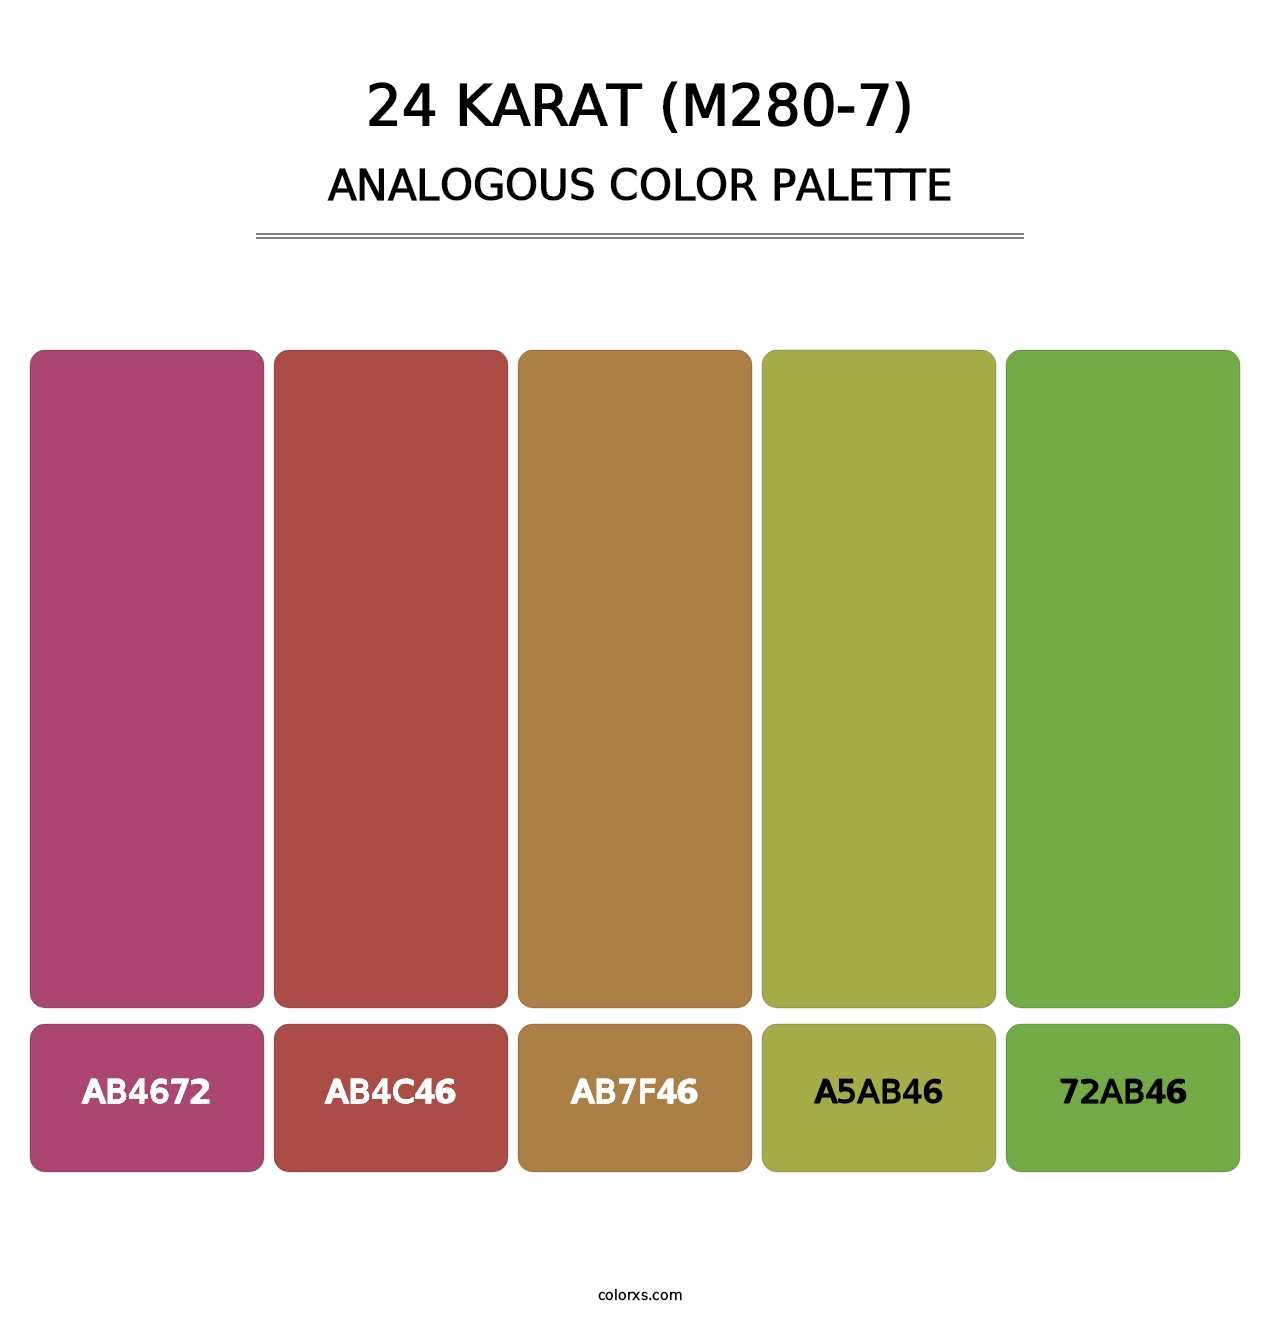 24 Karat (M280-7) - Analogous Color Palette